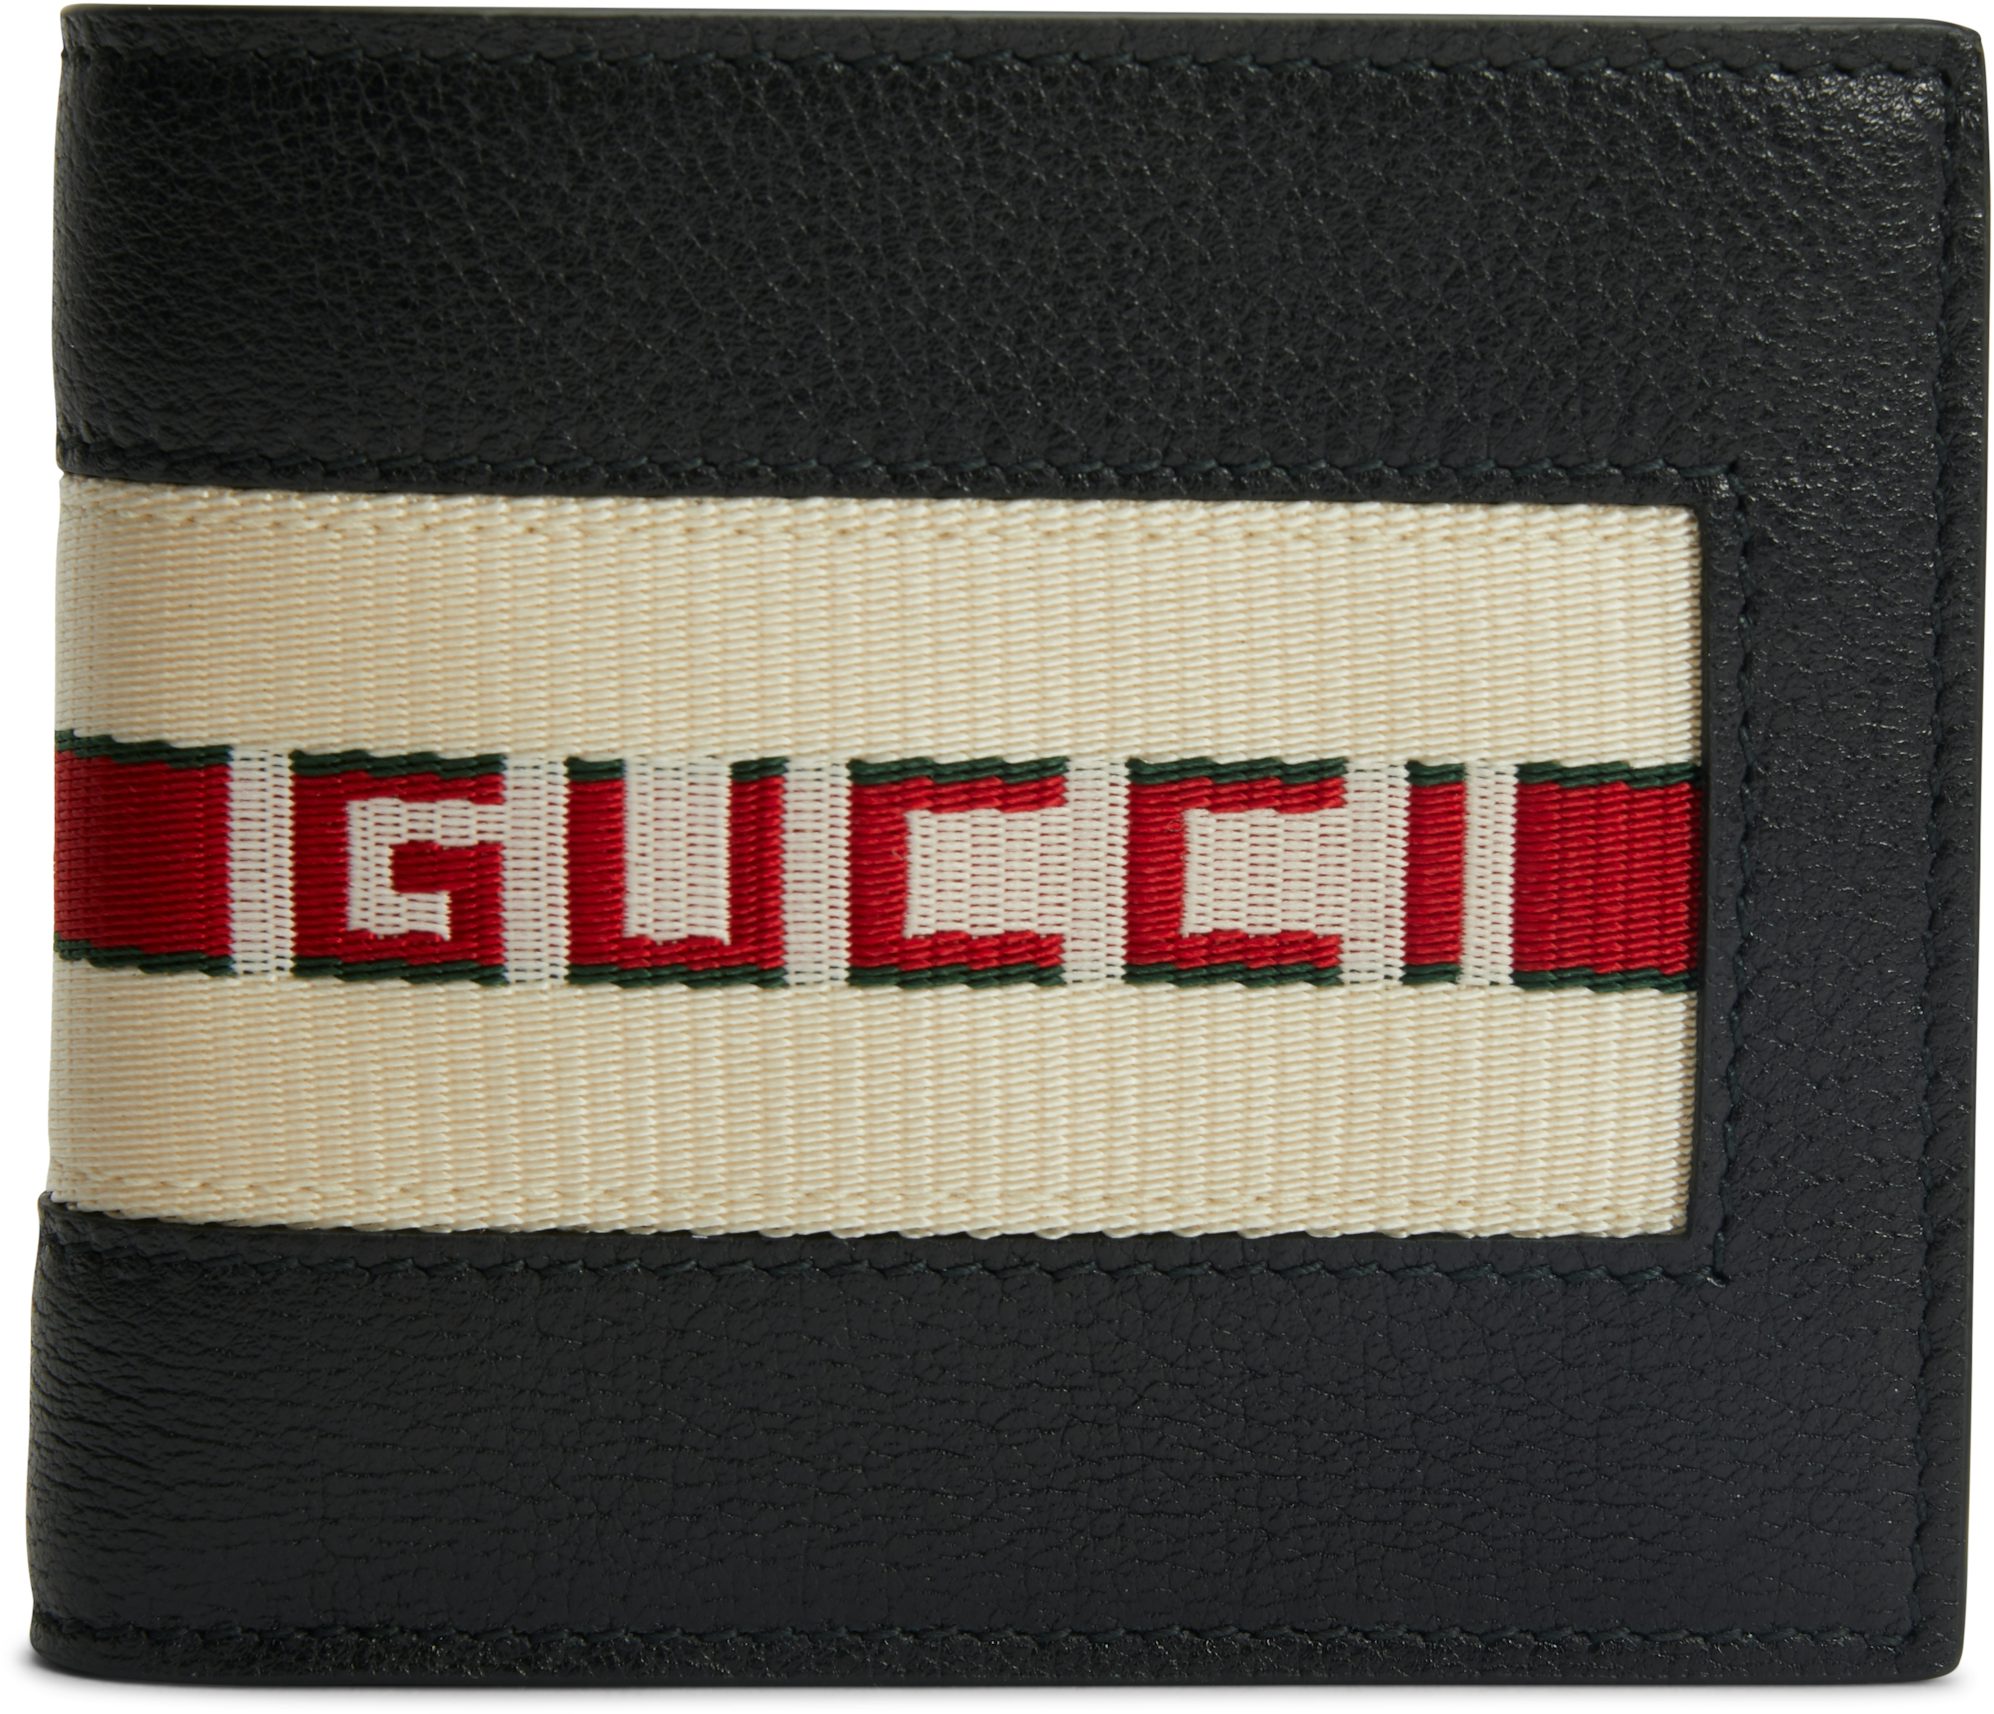 Gucci Men Wallet Stripe